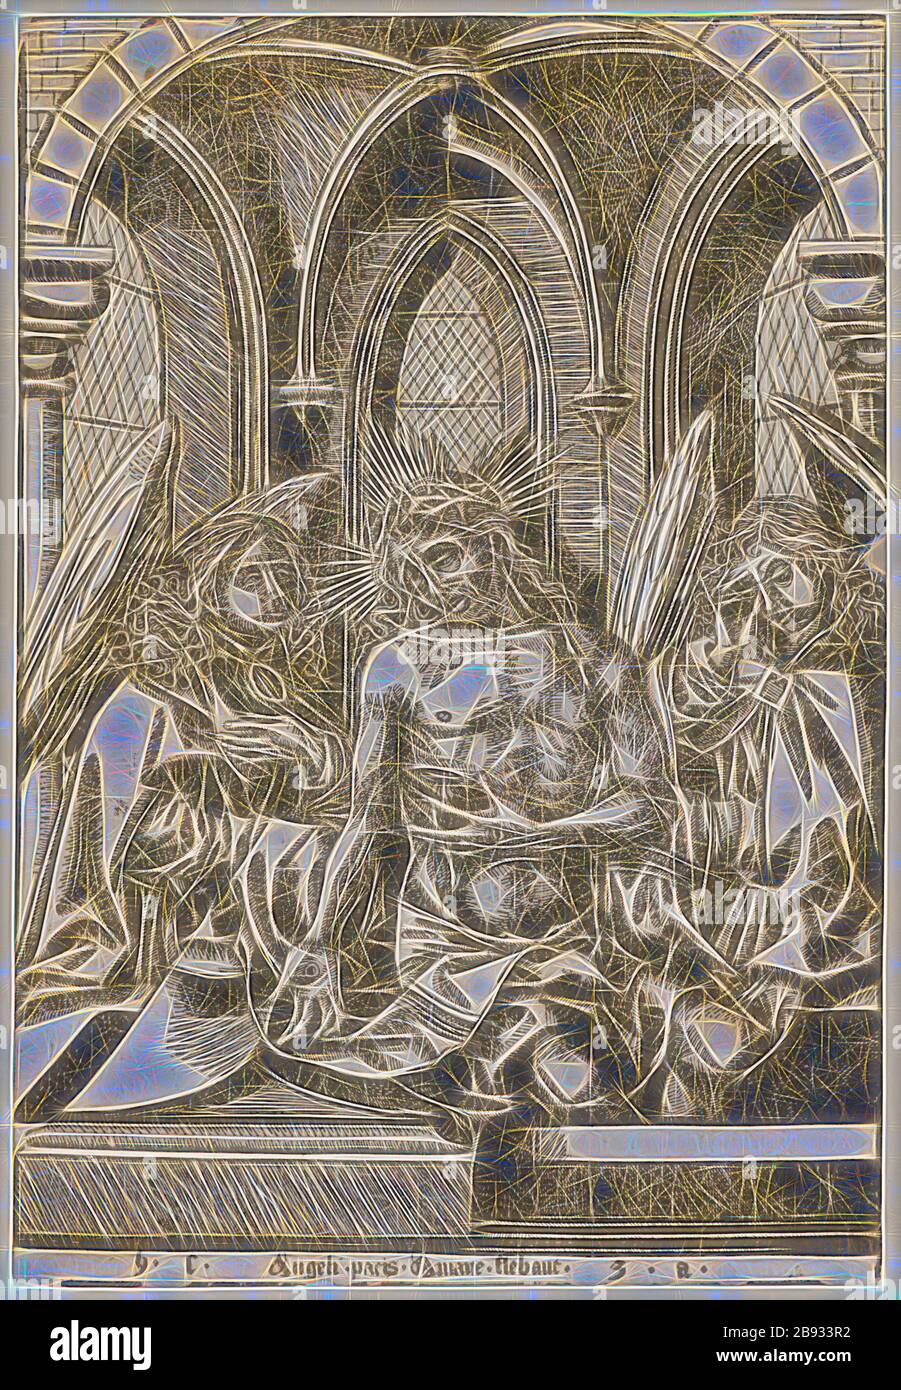 Der Schmerzensmann zwischen zwei Engeln (nach Israel van Meckenem), c 1500, Holzschnitt, folia: 27,1 x 18,5 cm, U. der Aufschrift: h.c., Angeli pacis Amare flüchtig, z. B. anonym, Deutschland, um 1500, Israel van Meckenem, (Kopie nach/Kopie nach), Meckenheim (?) Um 1440/45-1503 hat sich der von Gibon neu vorgestellte Entwurf eines warmfröhlichen Lichts von Helligkeit und Lichtstrahlen erdacht. Klassische Kunst mit moderner Note neu erfunden. Fotografie, inspiriert vom Futurismus, die dynamische Energie moderner Technologie, Bewegung, Geschwindigkeit und Kultur revolutionieren. Stockfoto